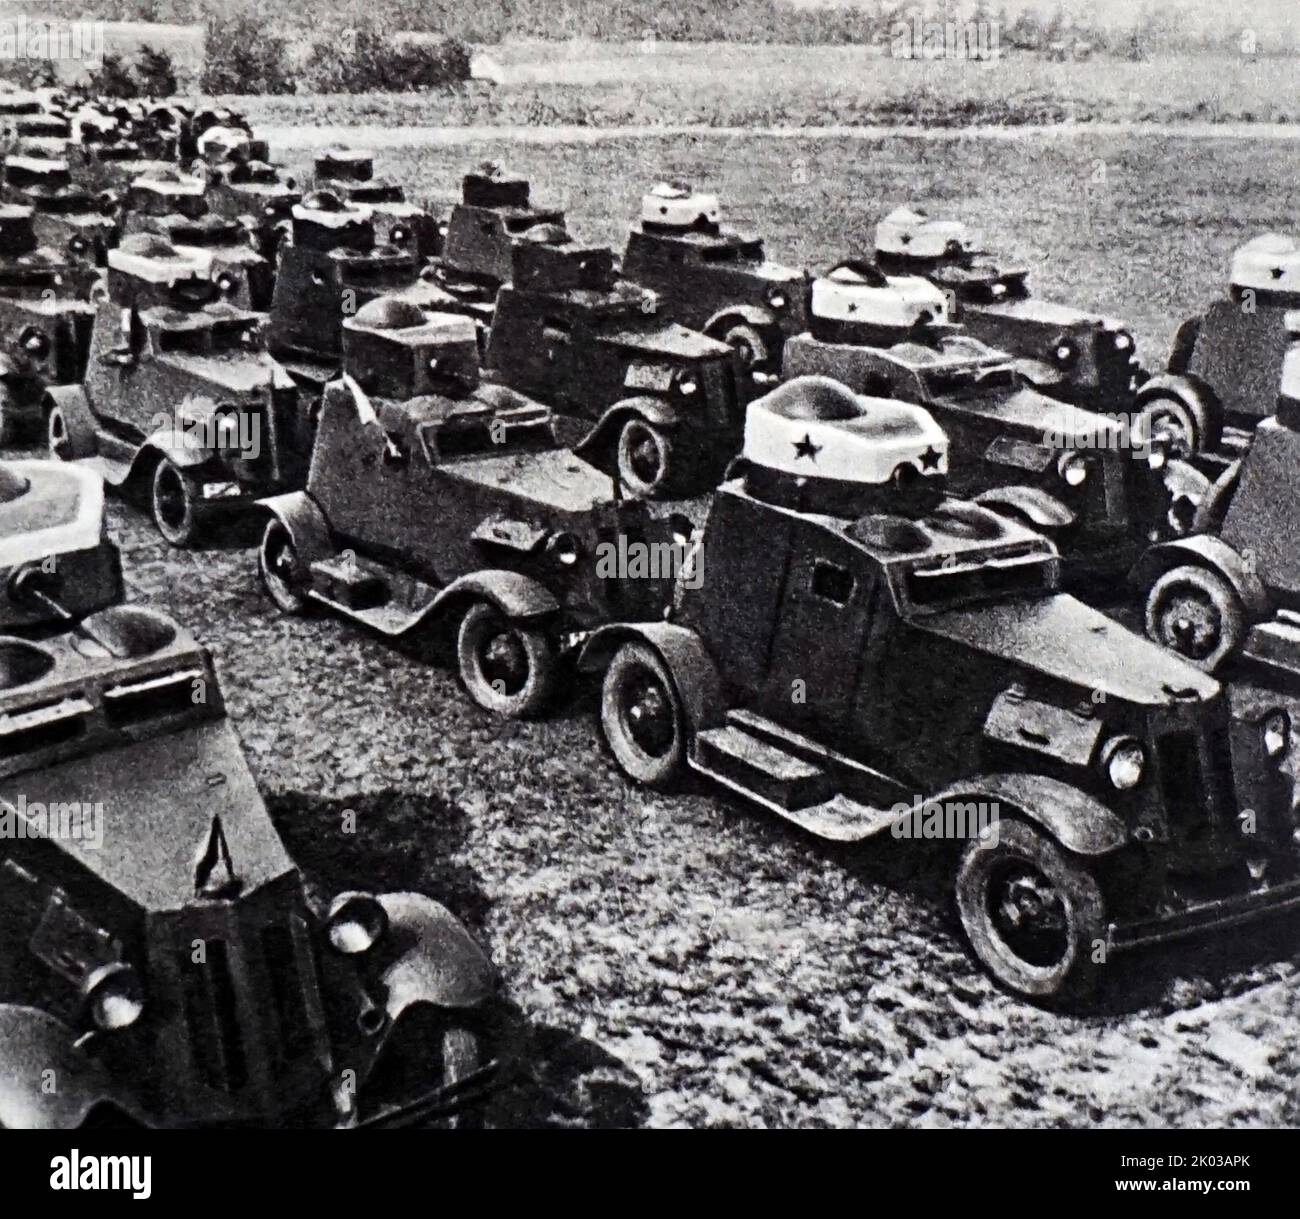 Unità blindata sovietica che avanza contro l'esercito tedesco. Russia, seconda guerra mondiale 1941. Foto Stock